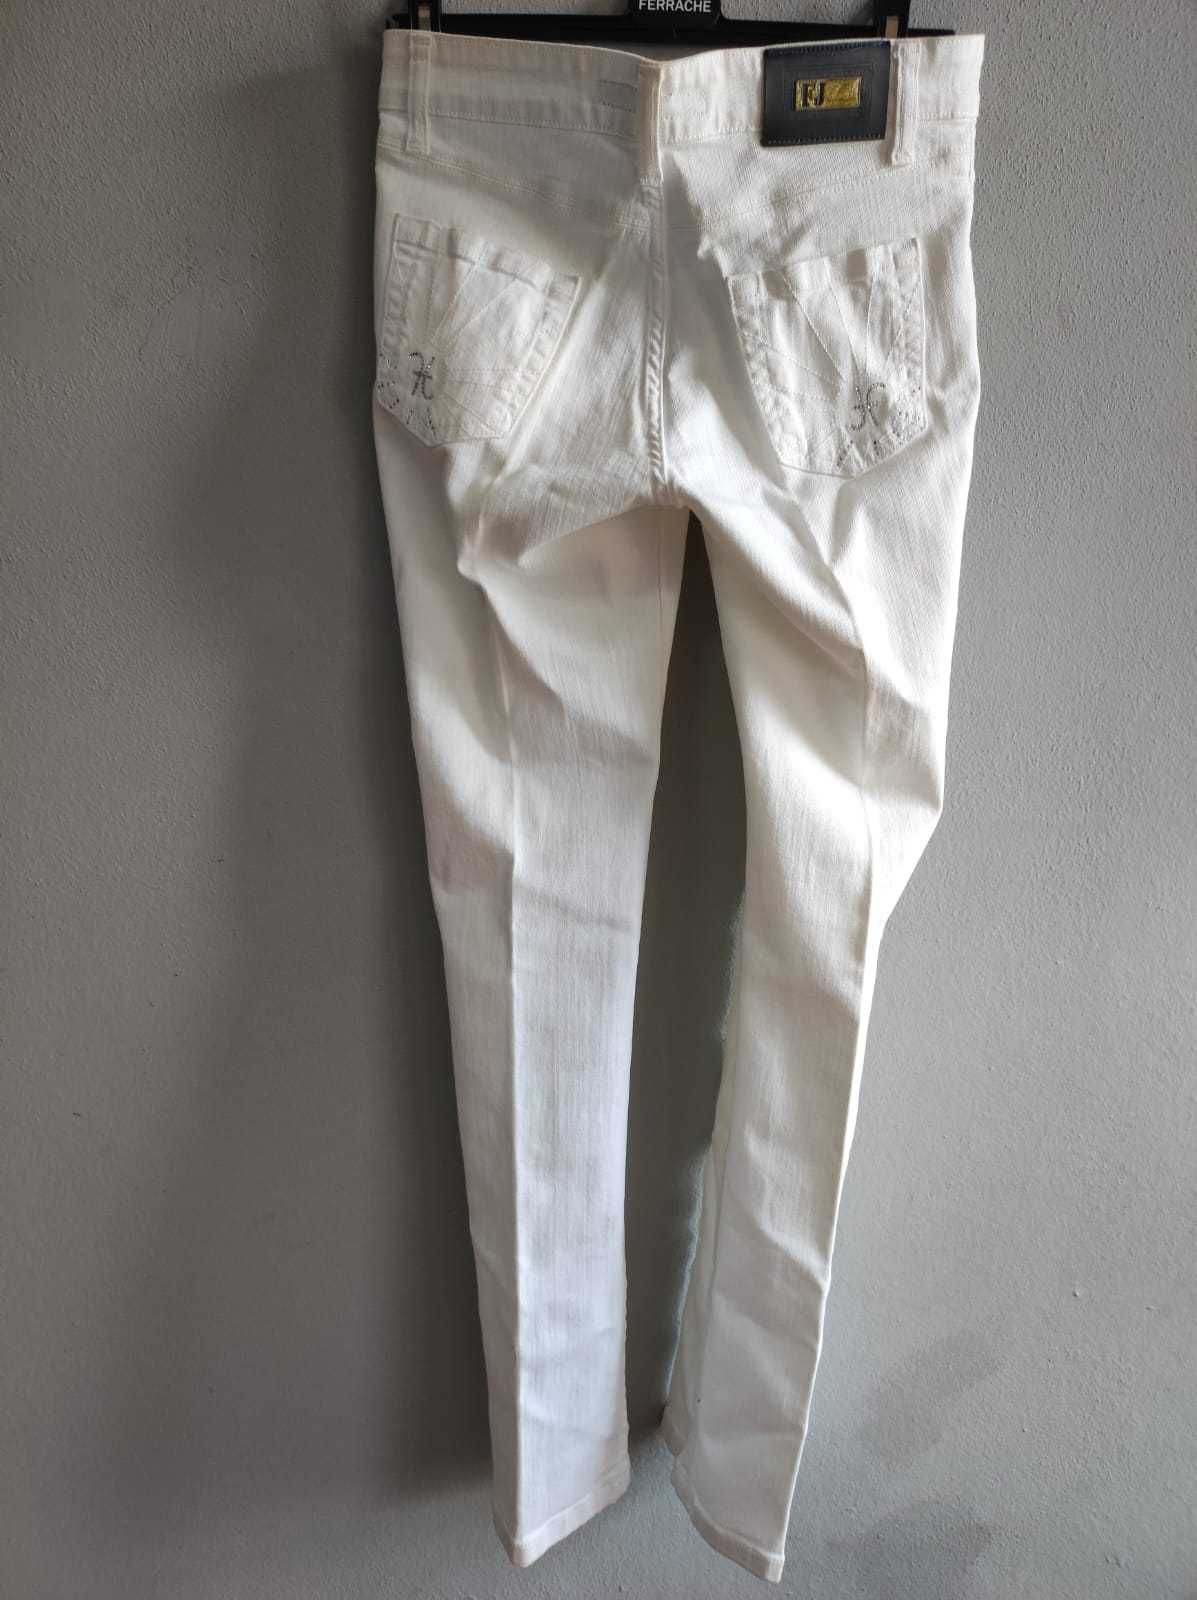 Calças de mulher ainda com etiqueta ( Recheio de loja )